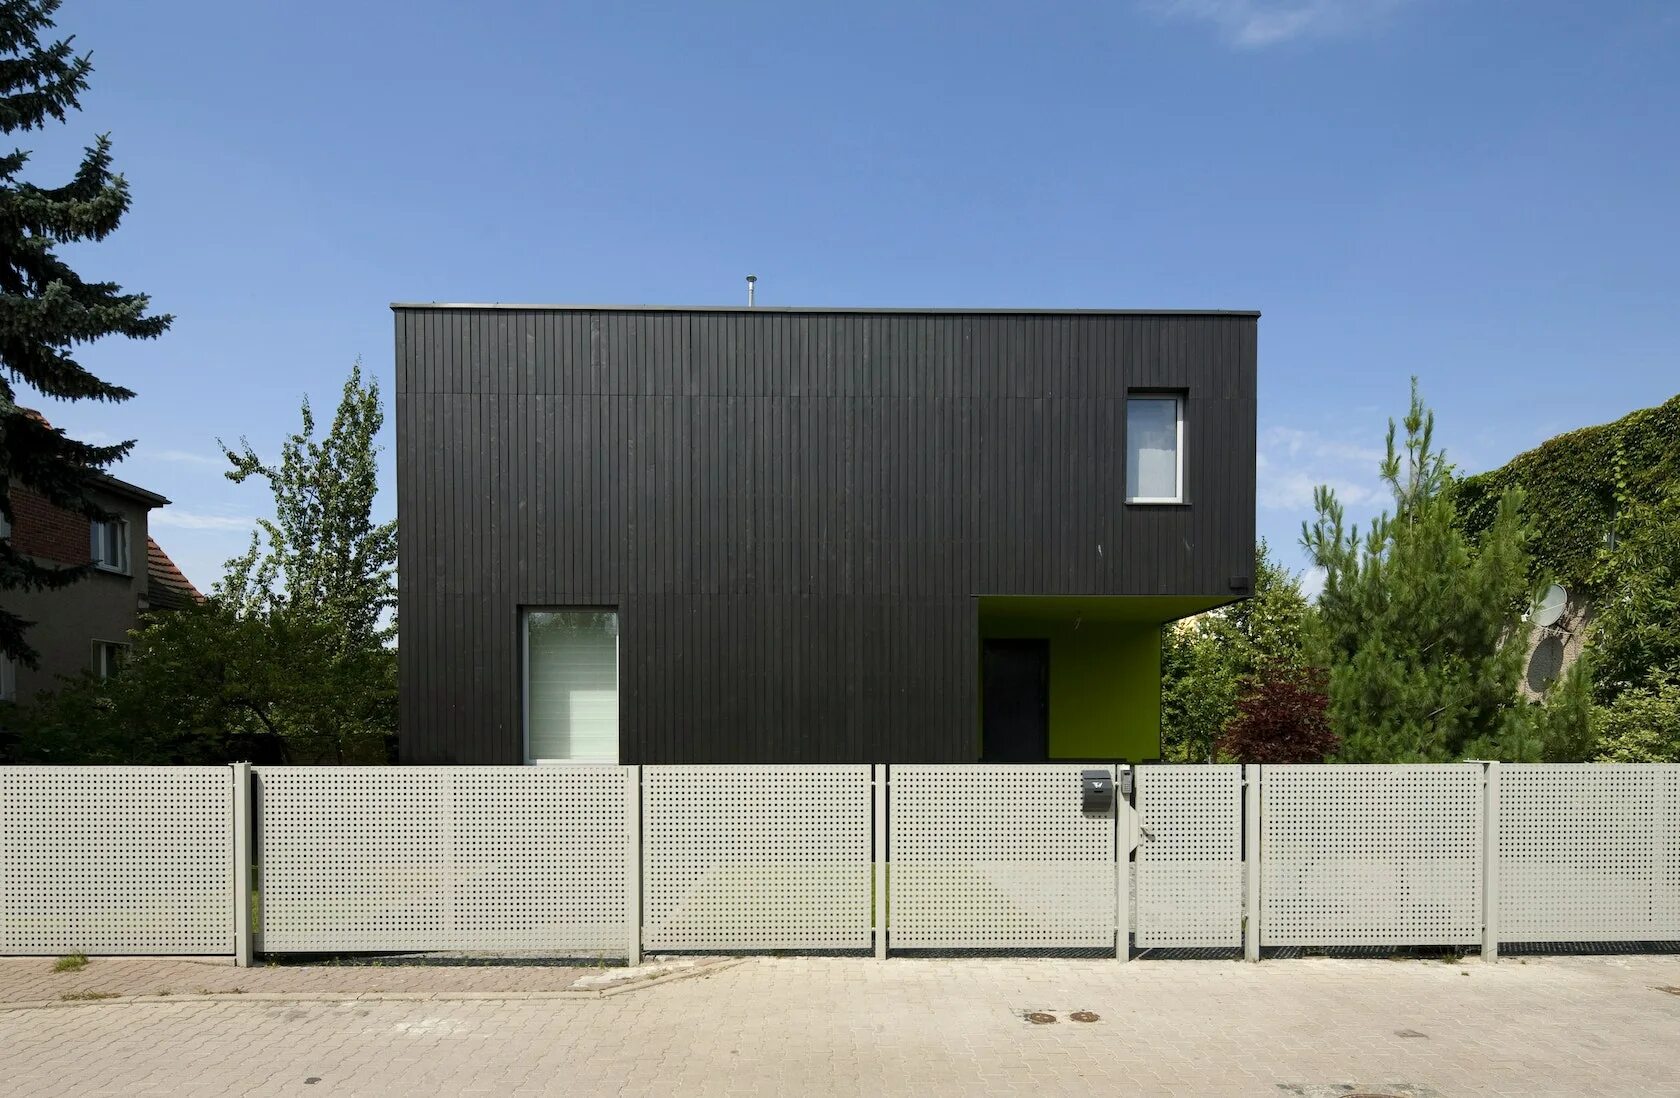 Дом куб. Черный дом куб. Черный минималистский куб в Польше. Дом белый куб. Дом куб продажа